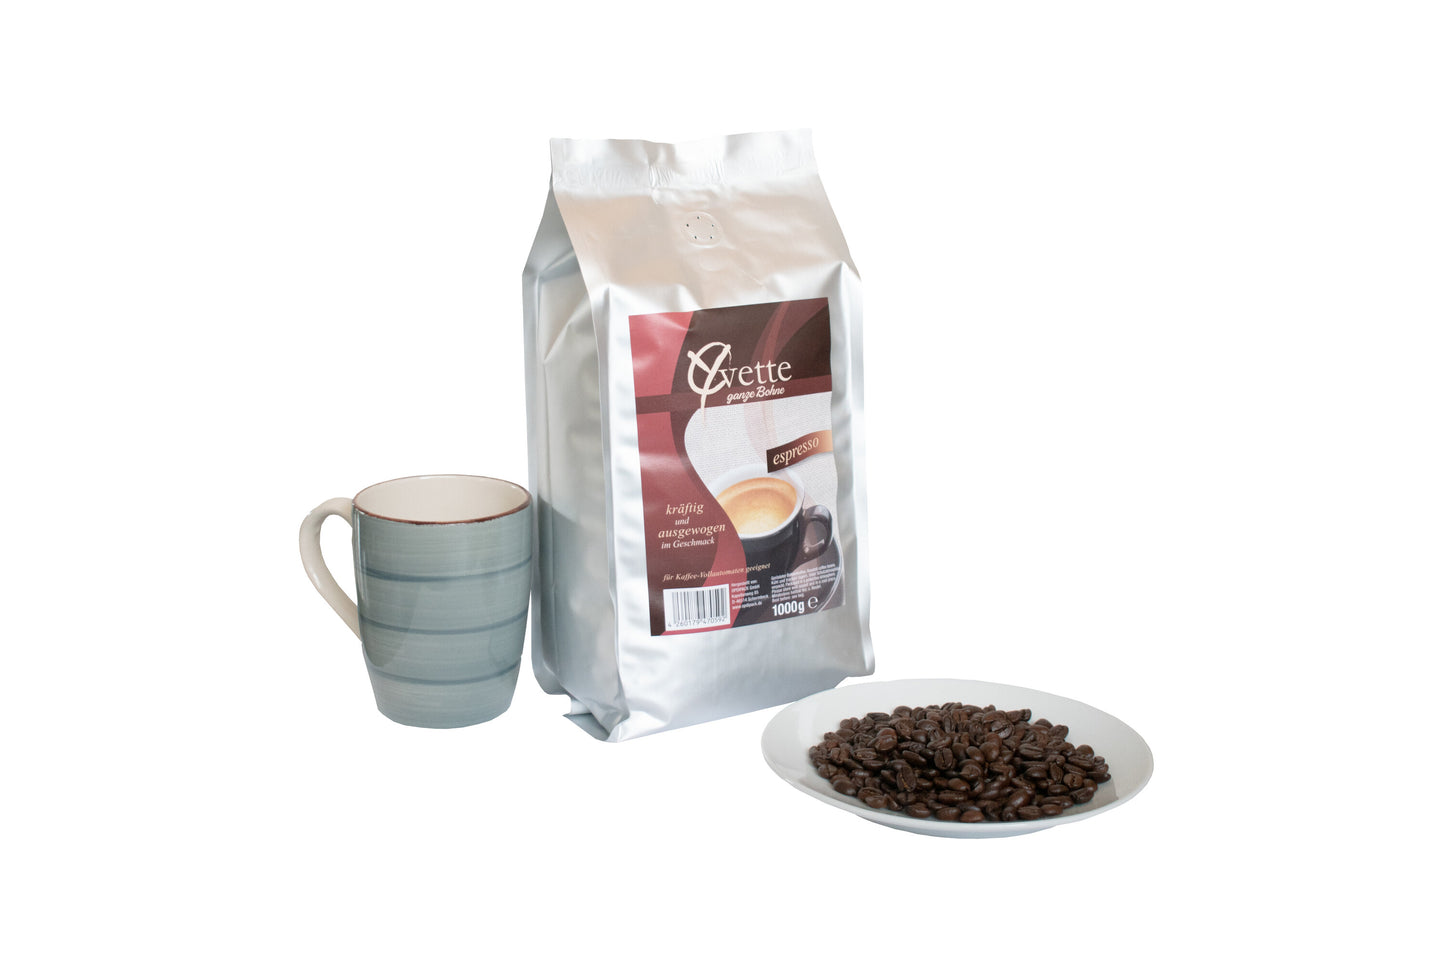 Ein silberner Beutel mit 1000g frisch gerösteten Espresso-Kaffeebohnen der Marke Yvette Kaffee. Der Beutel zeigt das Logo der Marke und die Produktbezeichnung. Vor dem Beutel ist ein Teller mit Kaffeebohnen und neben dem Beutel eine Tasse, welches ein Serviervorschlag darstellt.